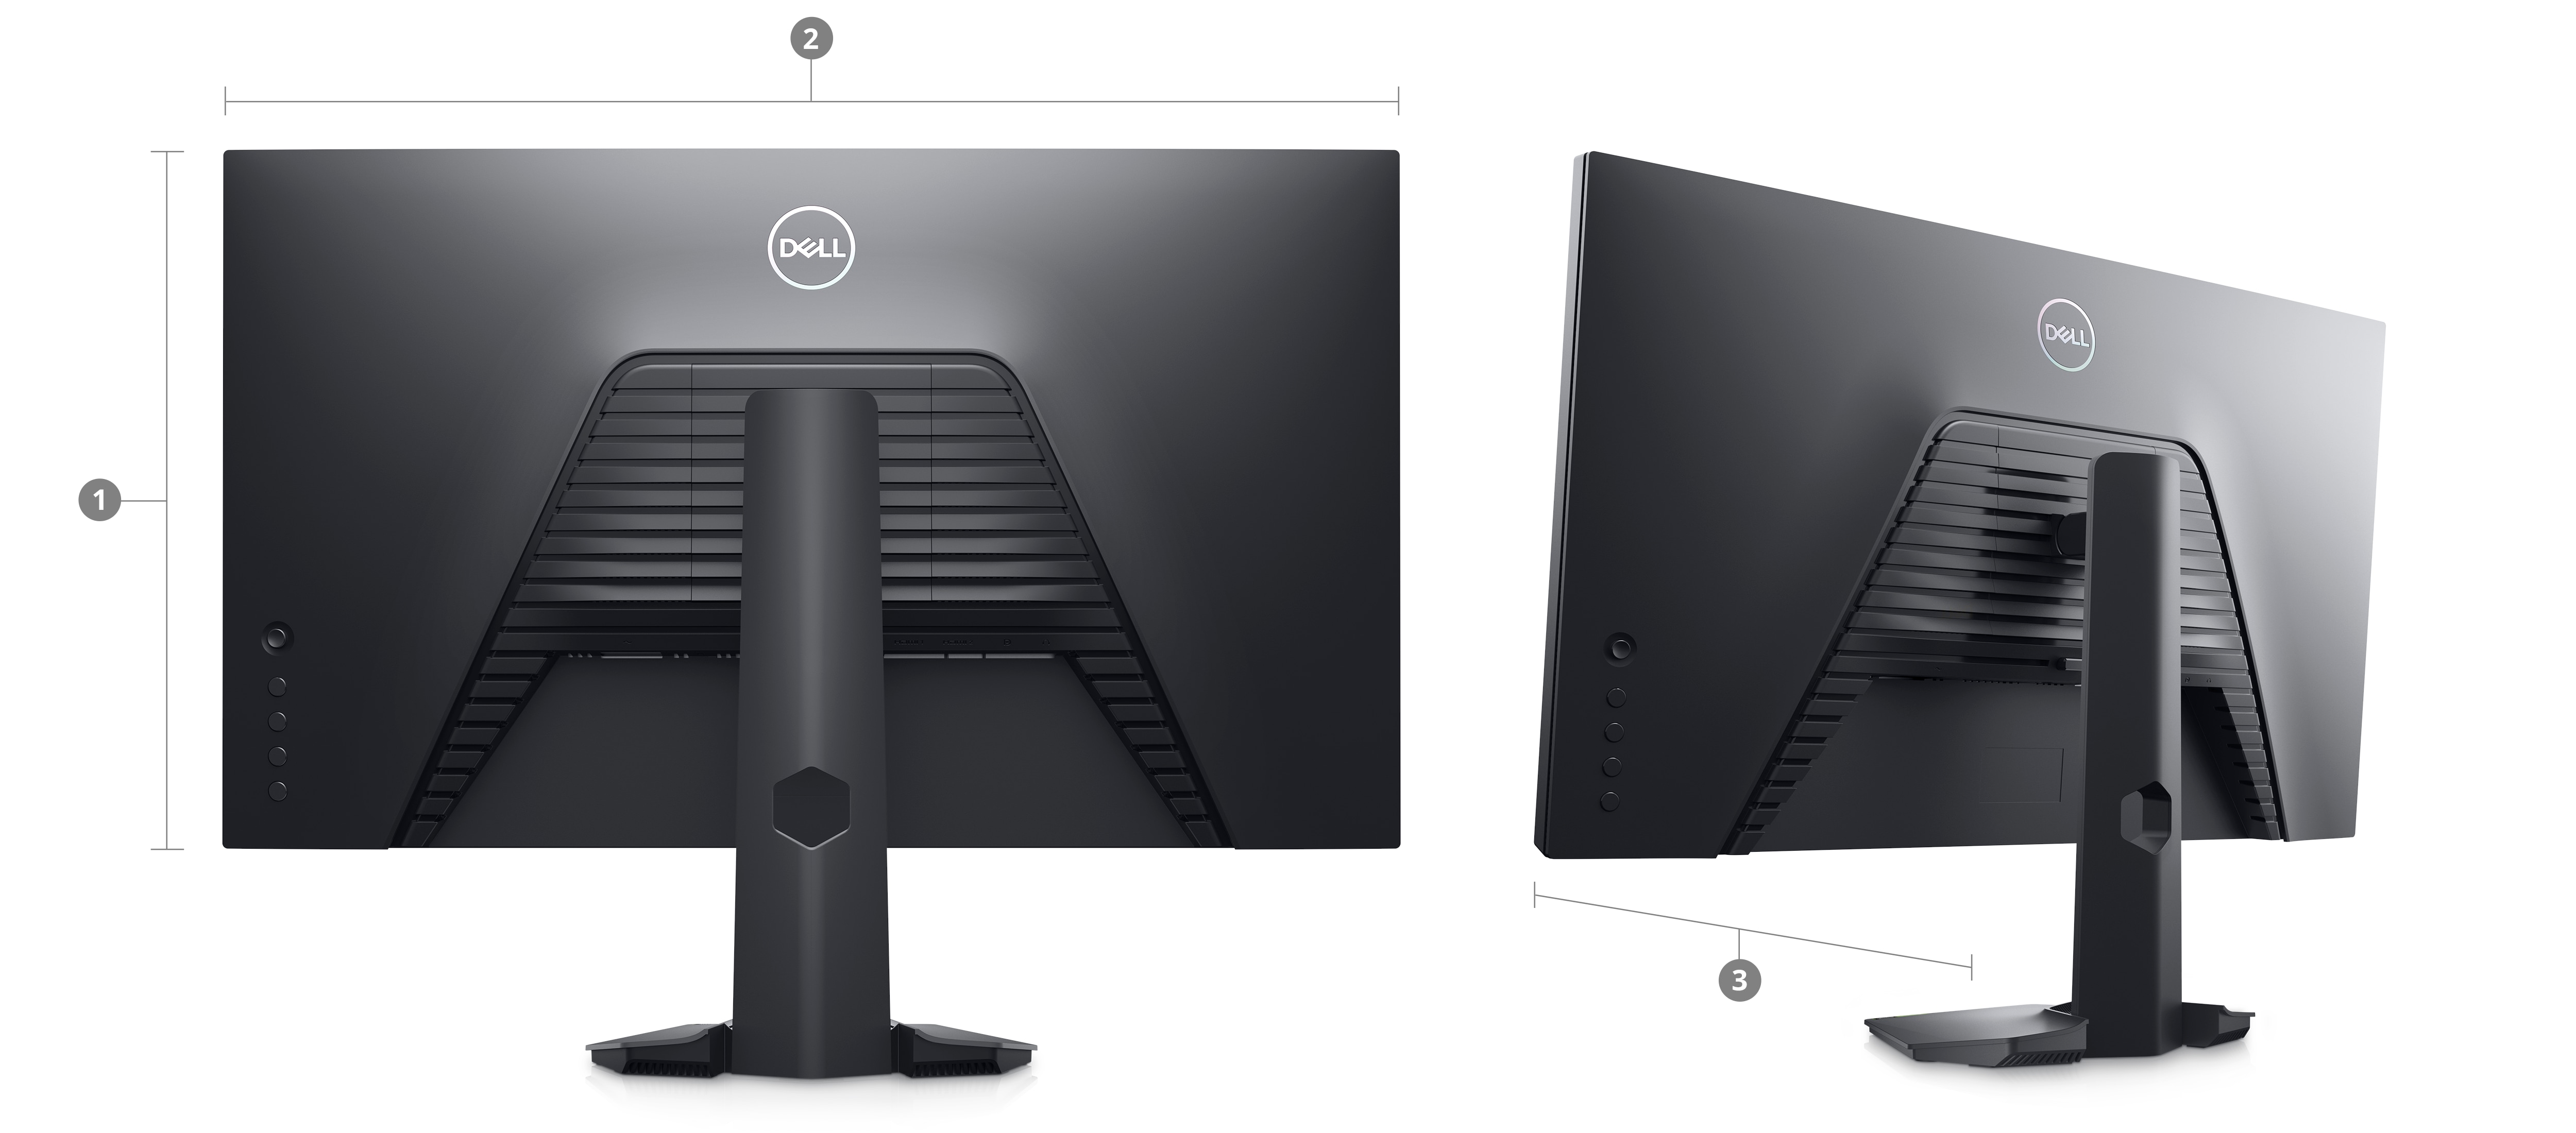 Imagem traseira de dois monitores gamers Dell S2722HS com números de 1 a 3, indicando dimensões e peso.